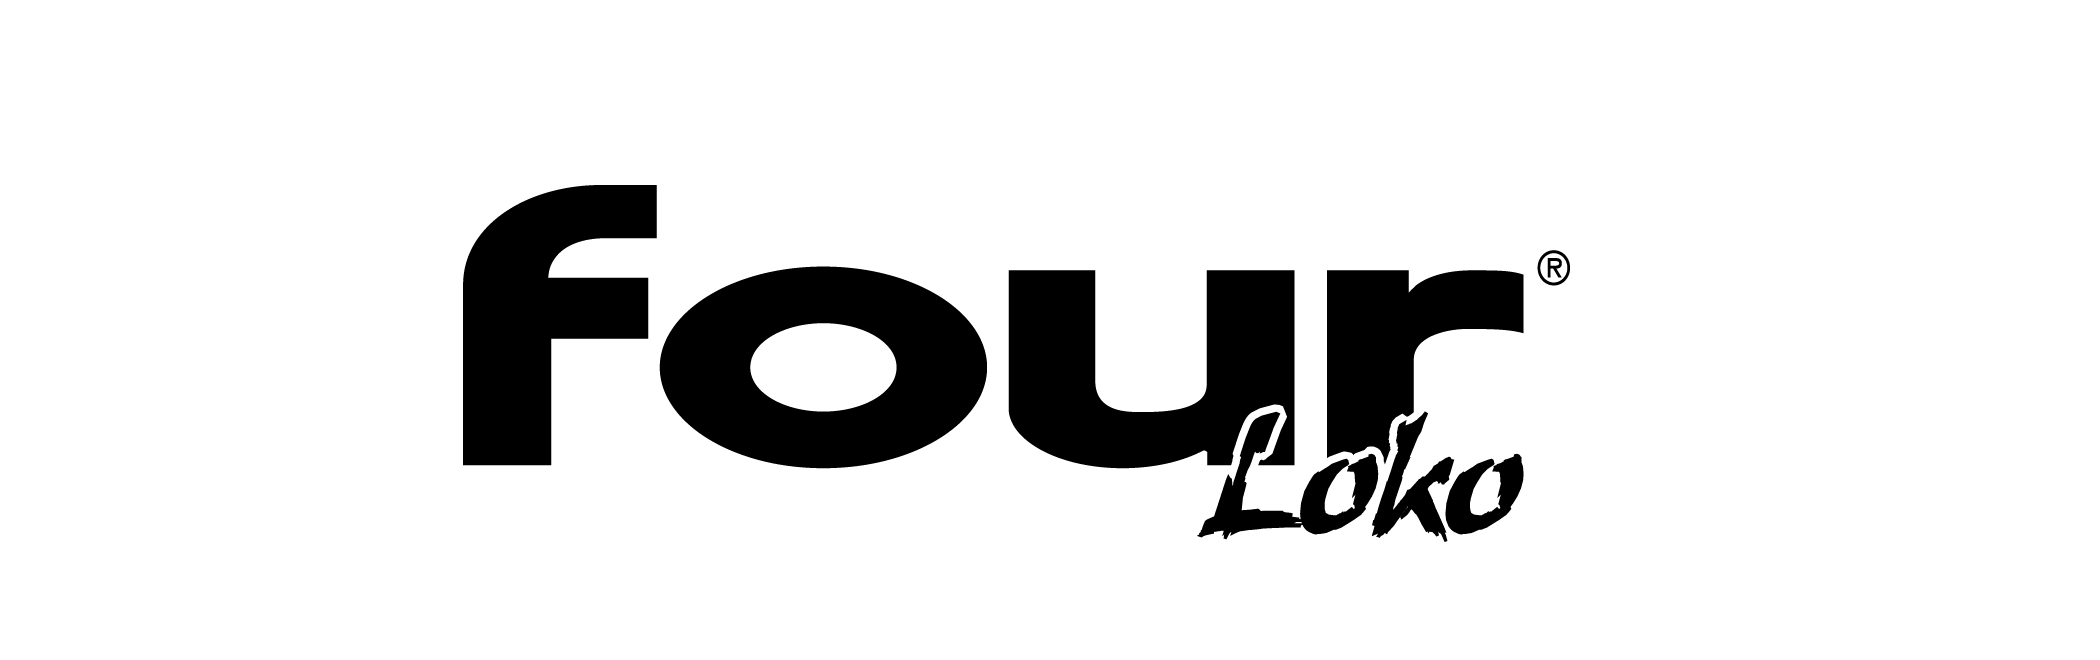 Four Loko Black logo